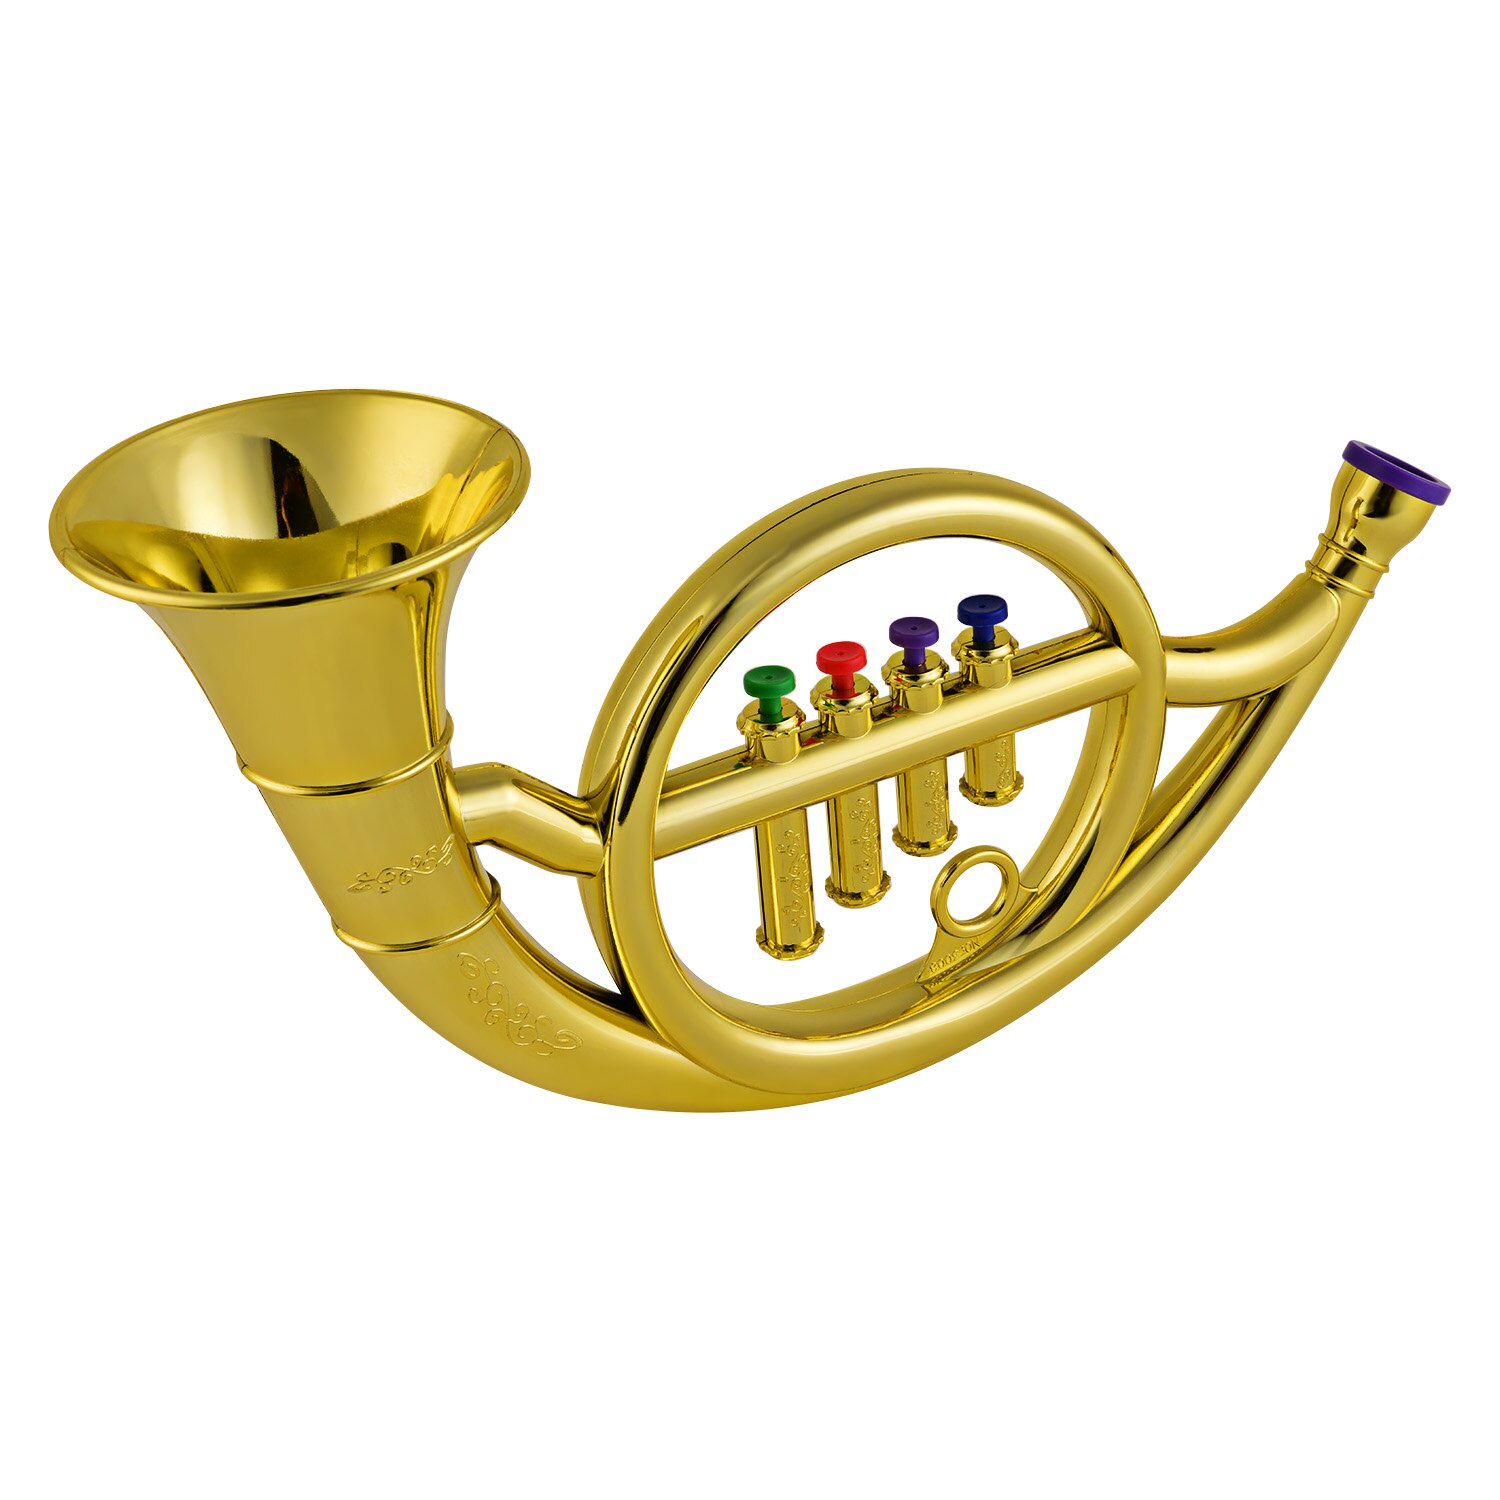 Musikalske blæseinstrumenter fransk horn til børn småbørn abs guldhorn med 4 farvede nøgler